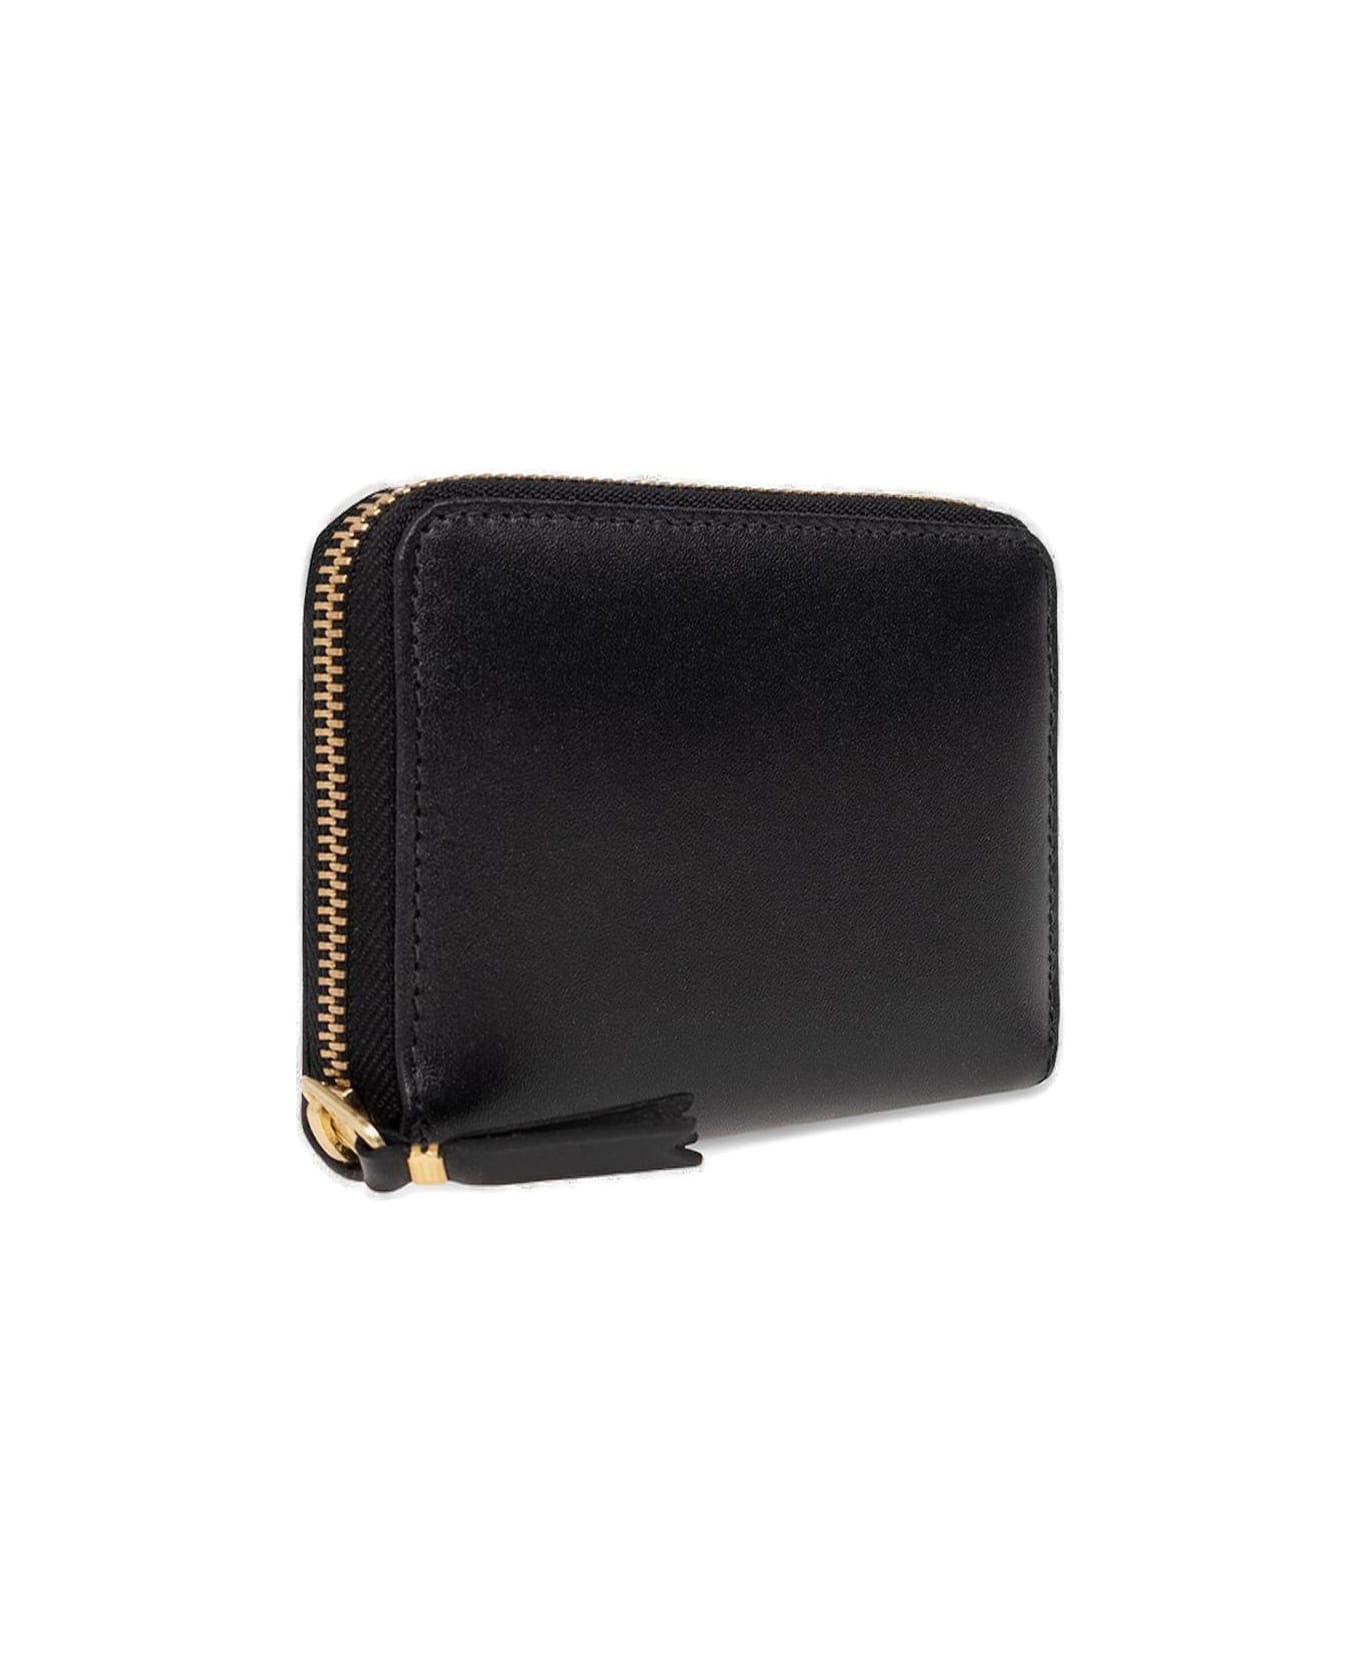 Comme des Garçons Wallet Classic Zipped Wallet - Black